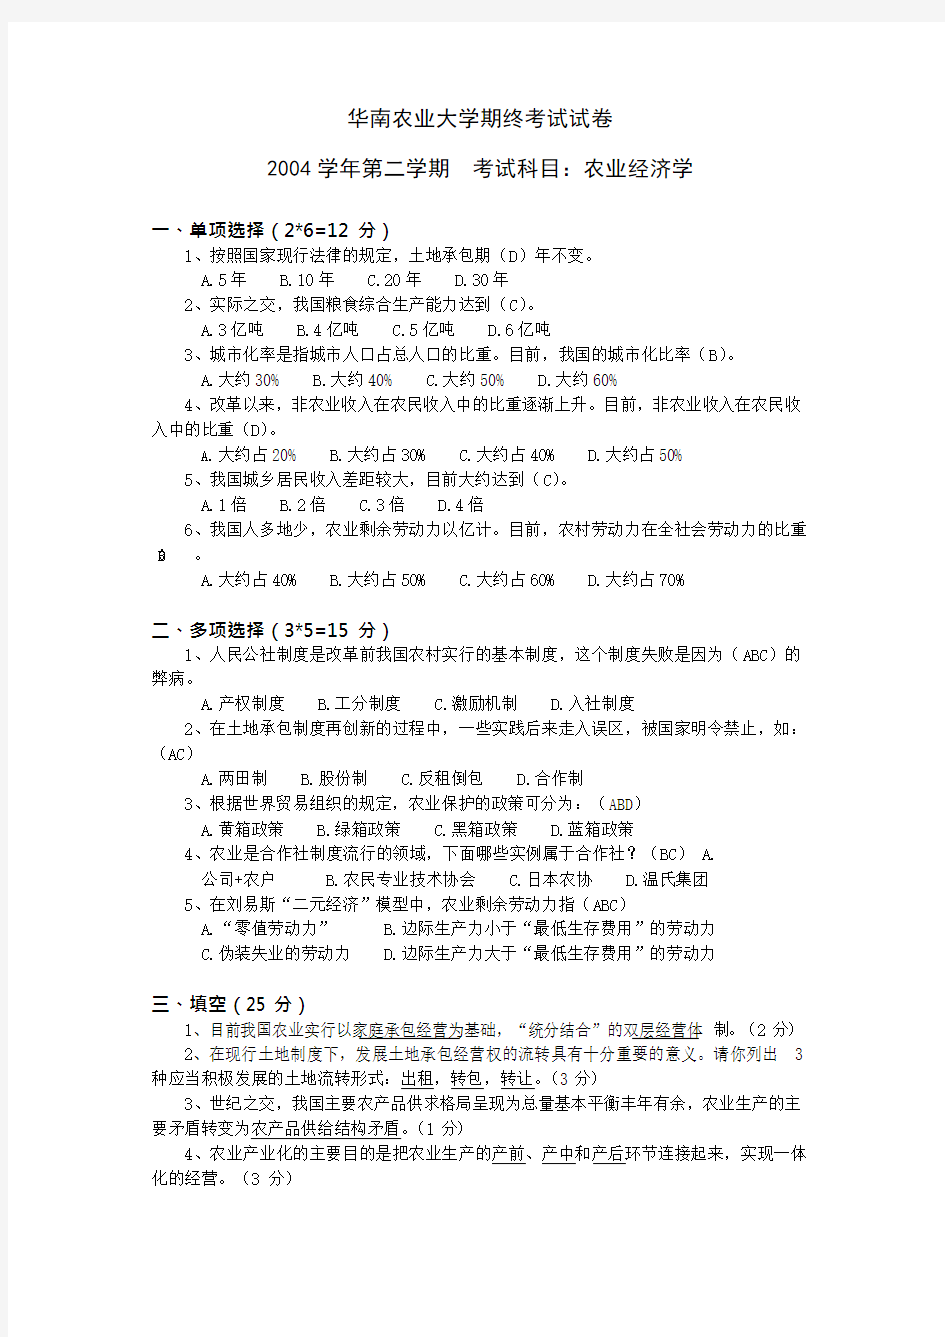 华南农业大学农业经济学期末考试试卷及答案(3)(最新整理)